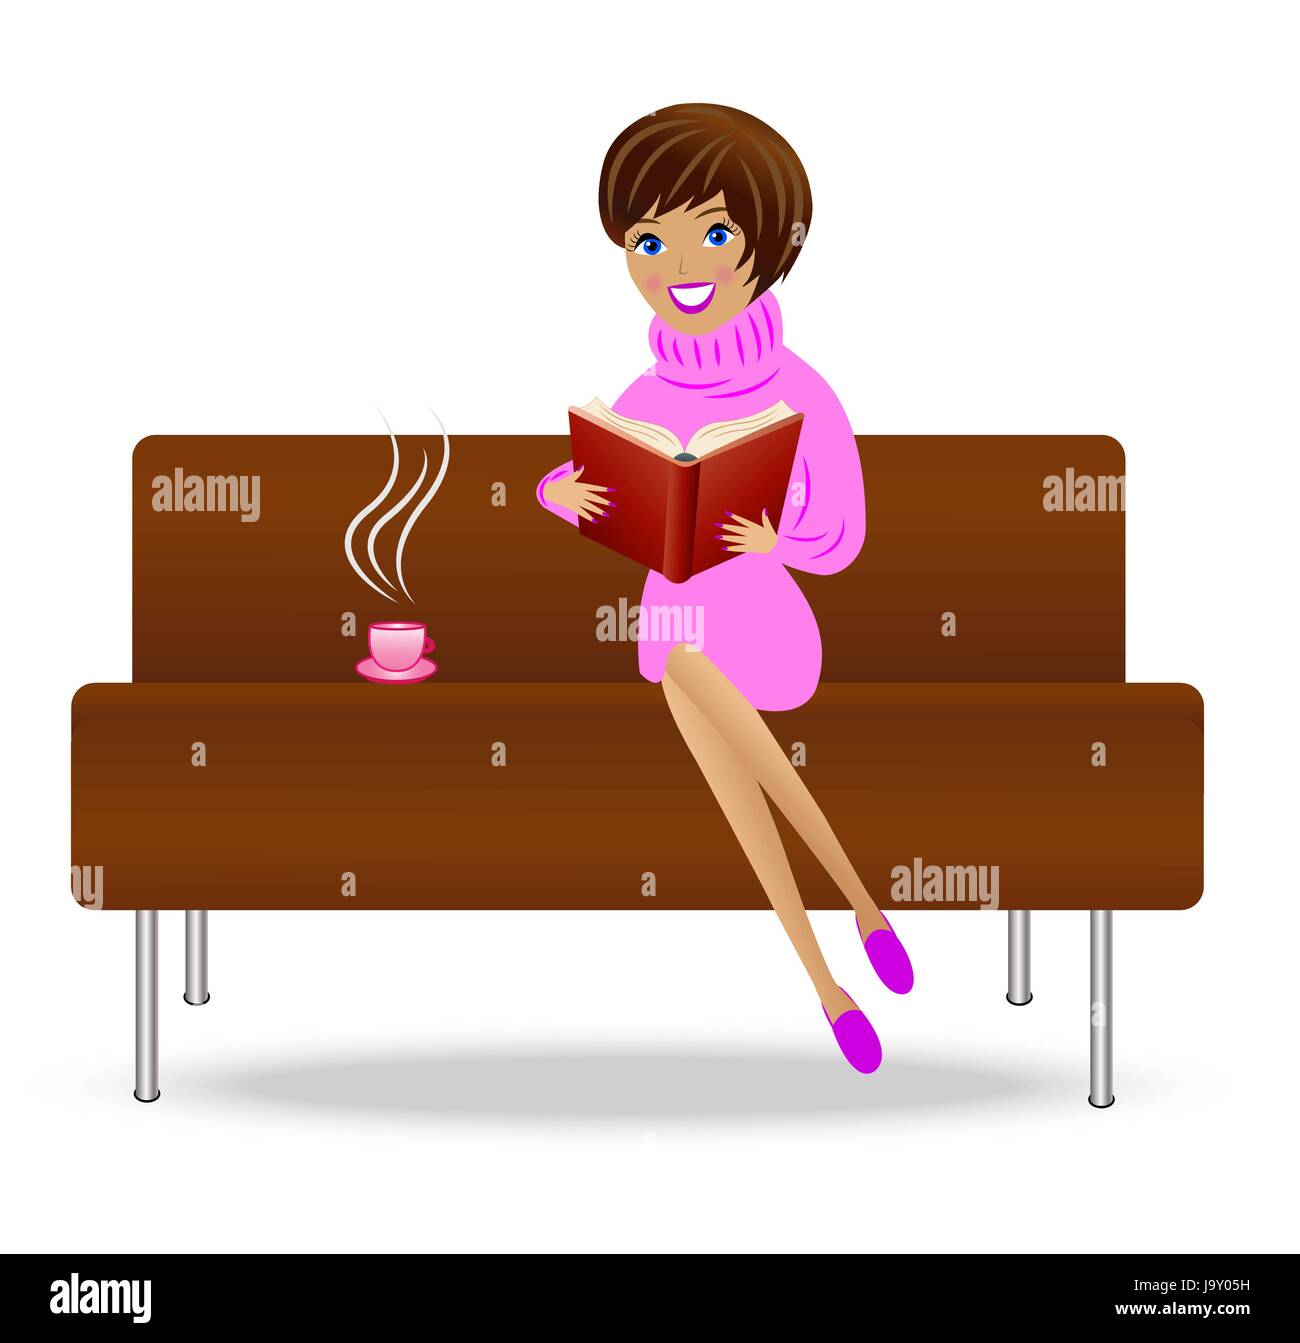 Мама сидит в кресле. Девочка сидит на диване. Девочка на диване мультяшная. Клипарт женщина на диване. Рисунок женщины а с книгой на диване.